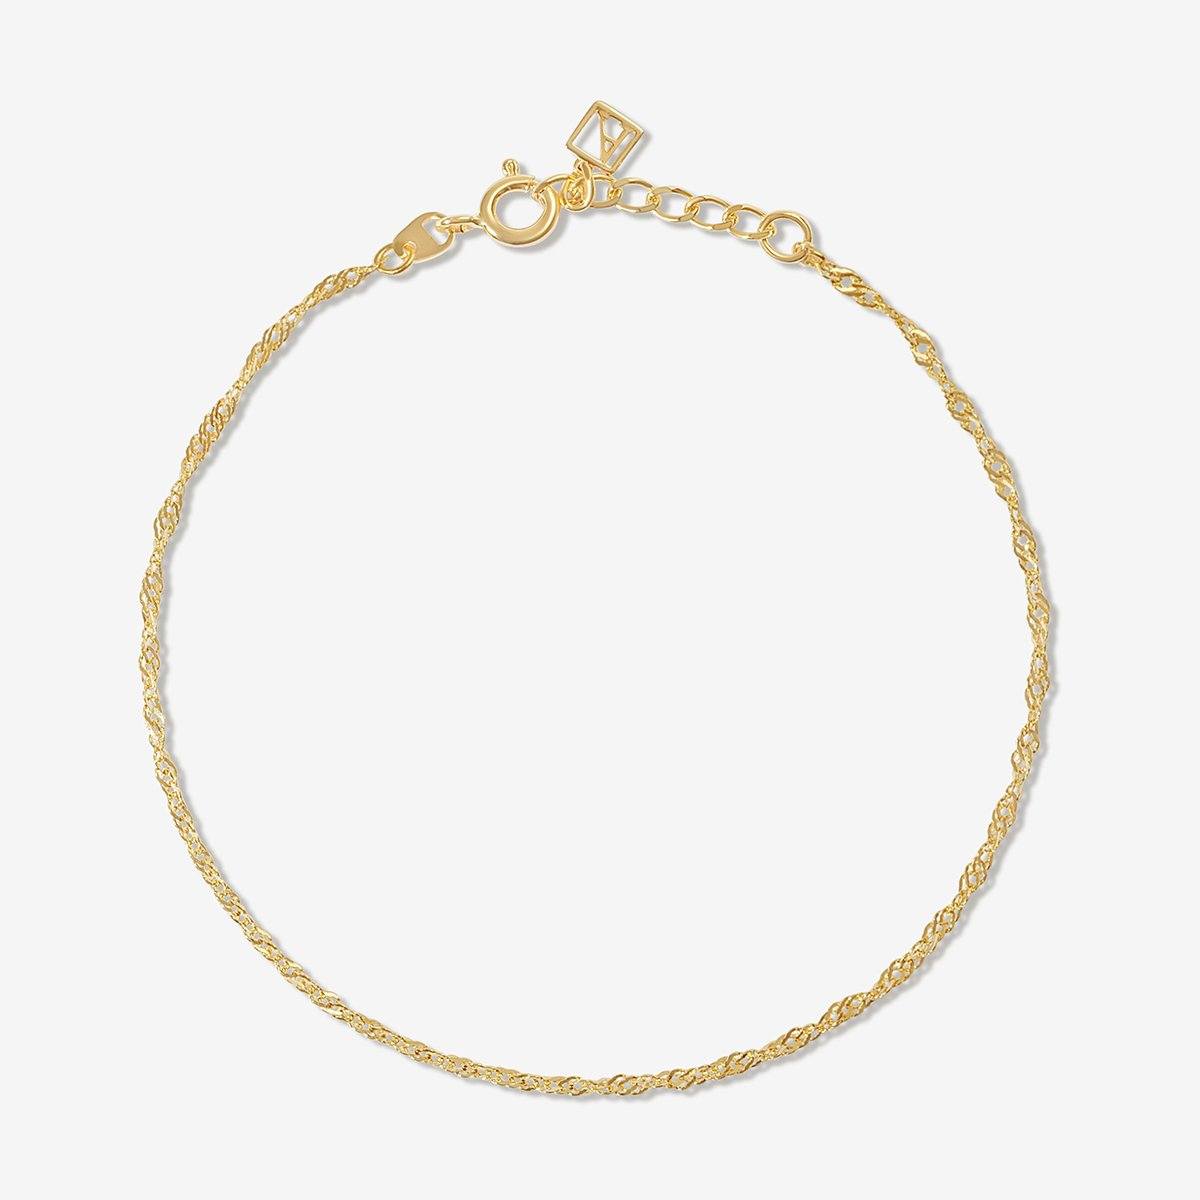 10K Yellow Gold Twisted Hinged Bangle Bracelet